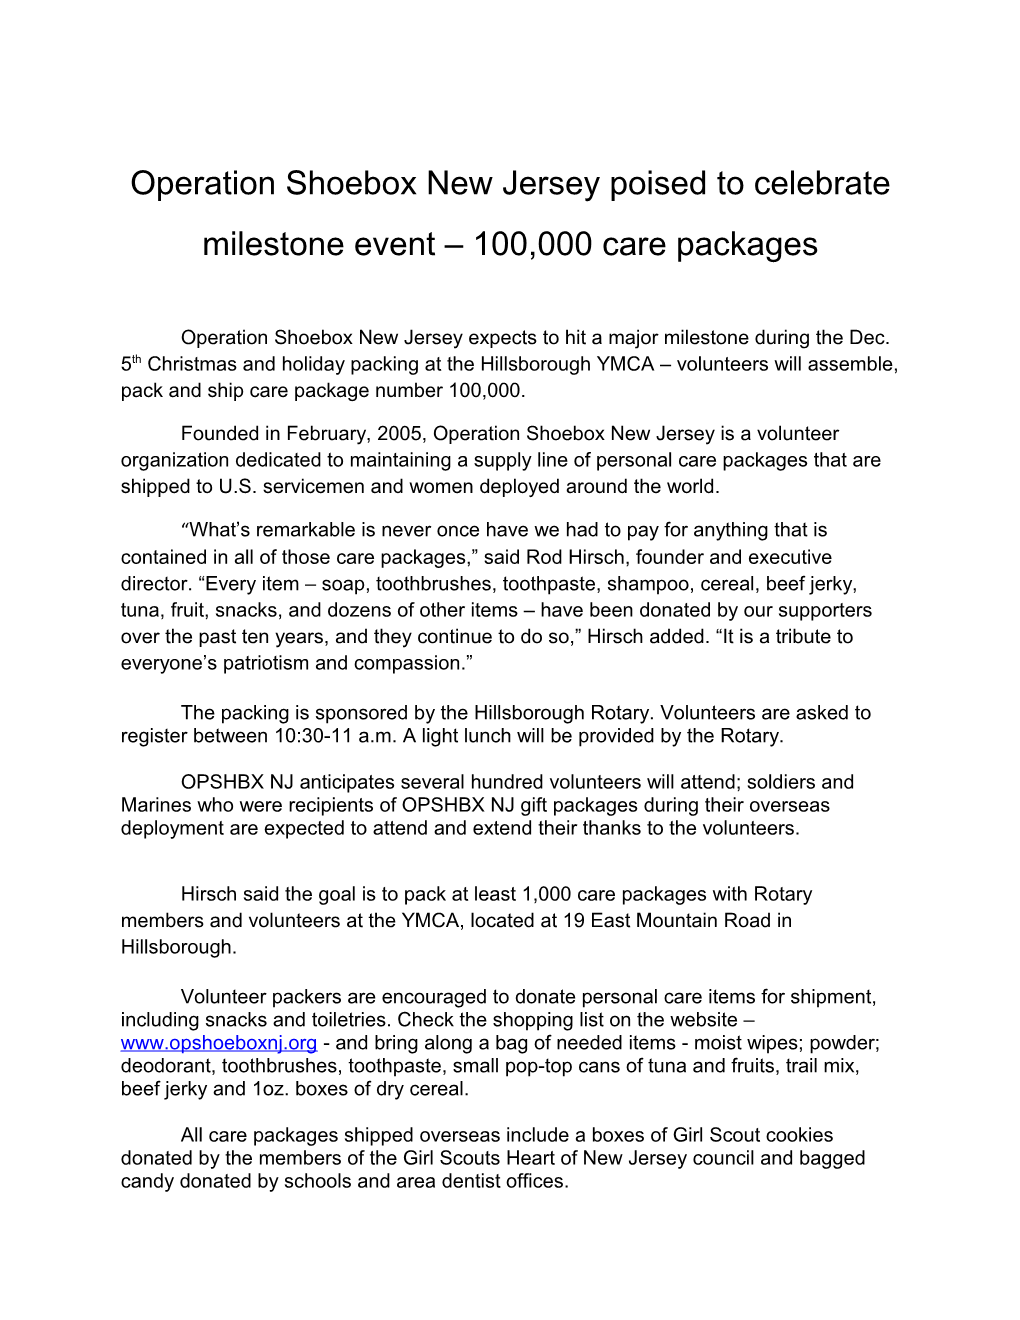 Operation Shoebox New Jersey Poised to Celebrate